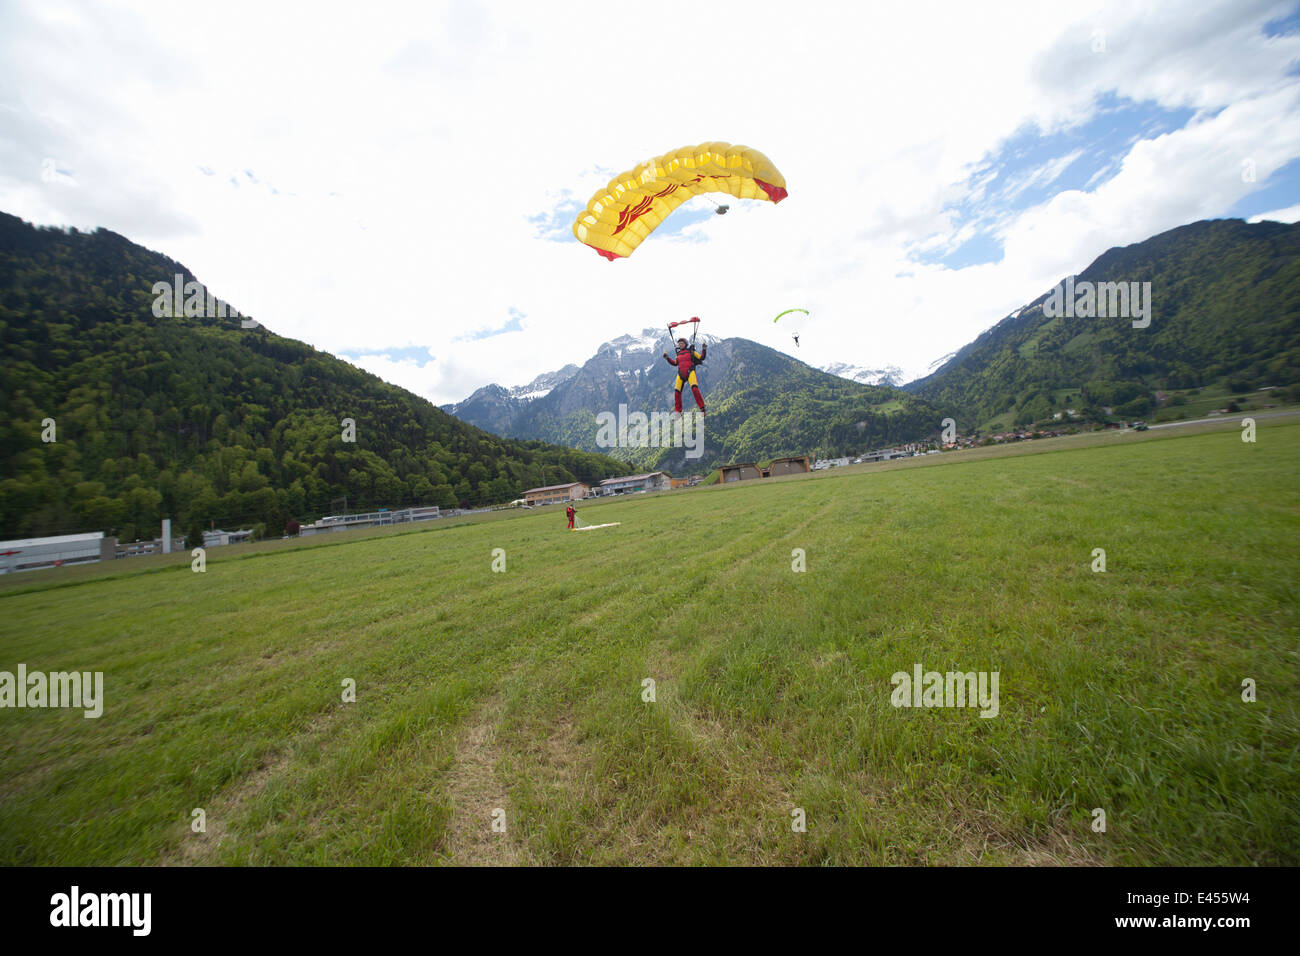 Team von drei Fallschirmspringer mit Fallschirmen landen im Feld, Interlaken, Bern, Schweiz Stockfoto